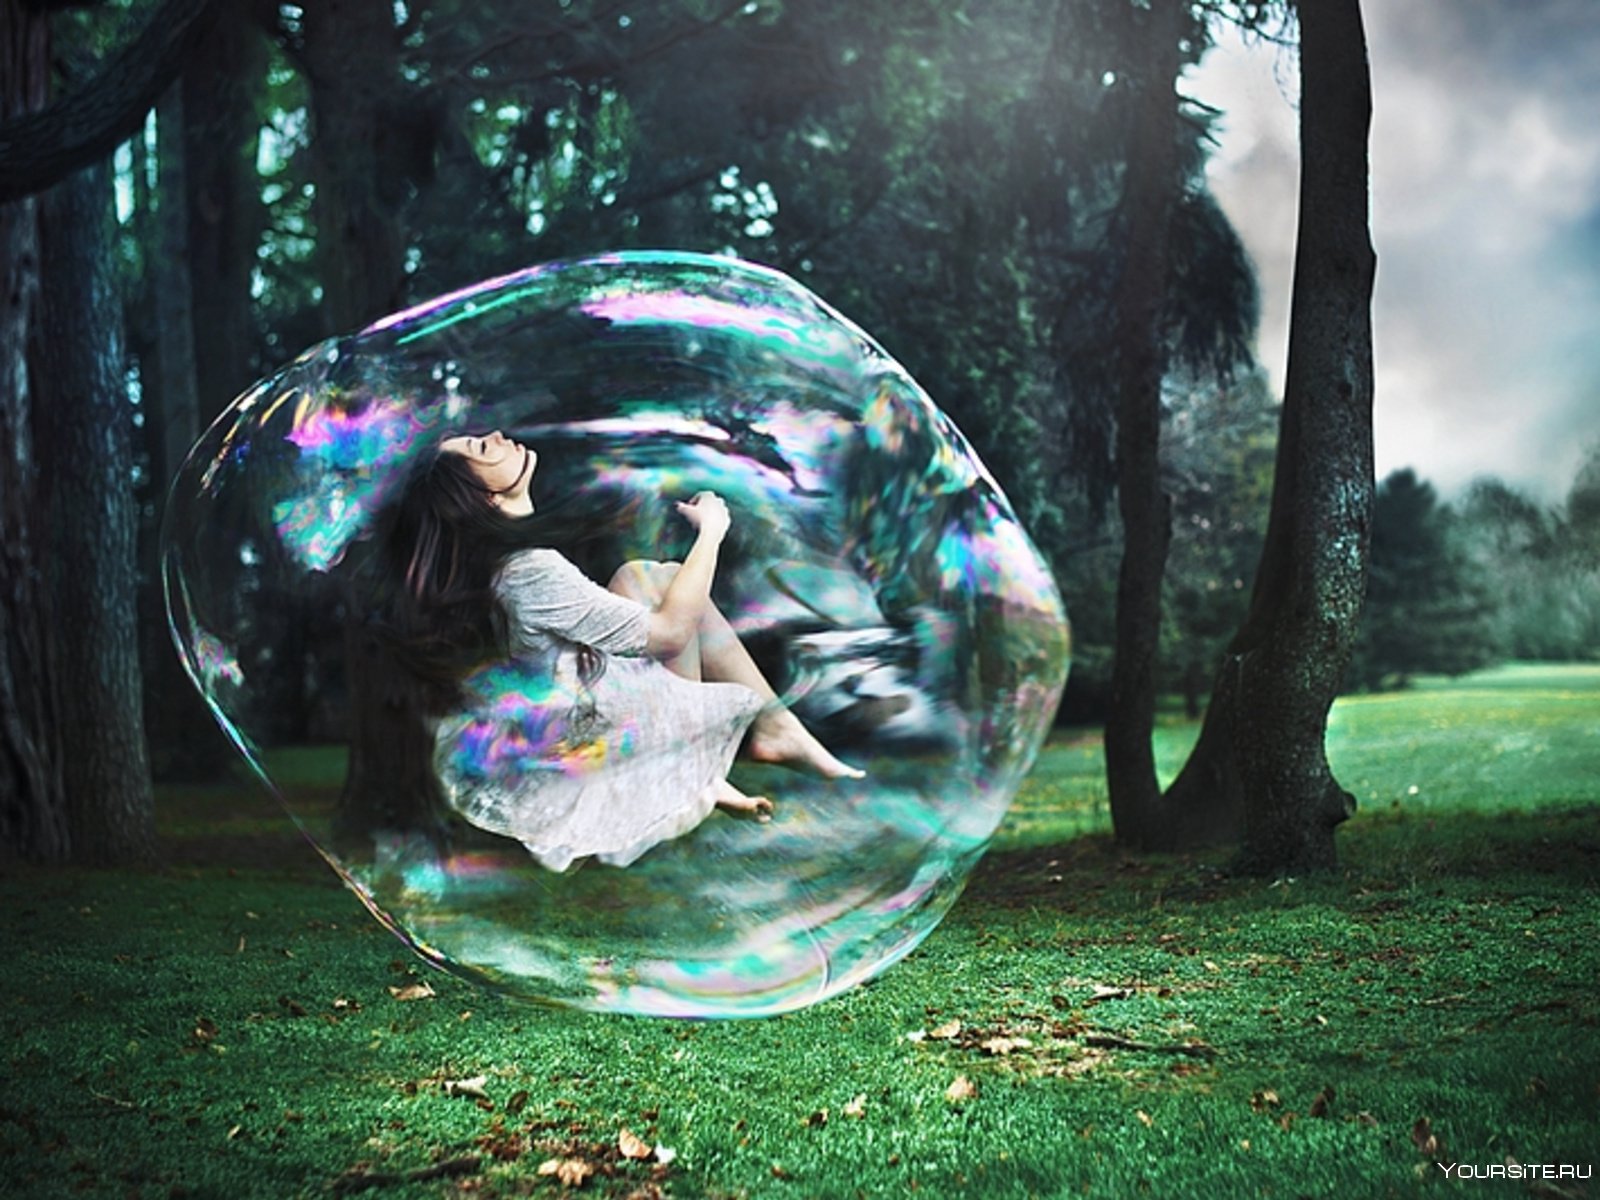 Какая девушка внутри. Человек в мыльном пузыре. Человек в мвльном пощуре. Человек в шаре. Фотосессия с мыльными пузырями.